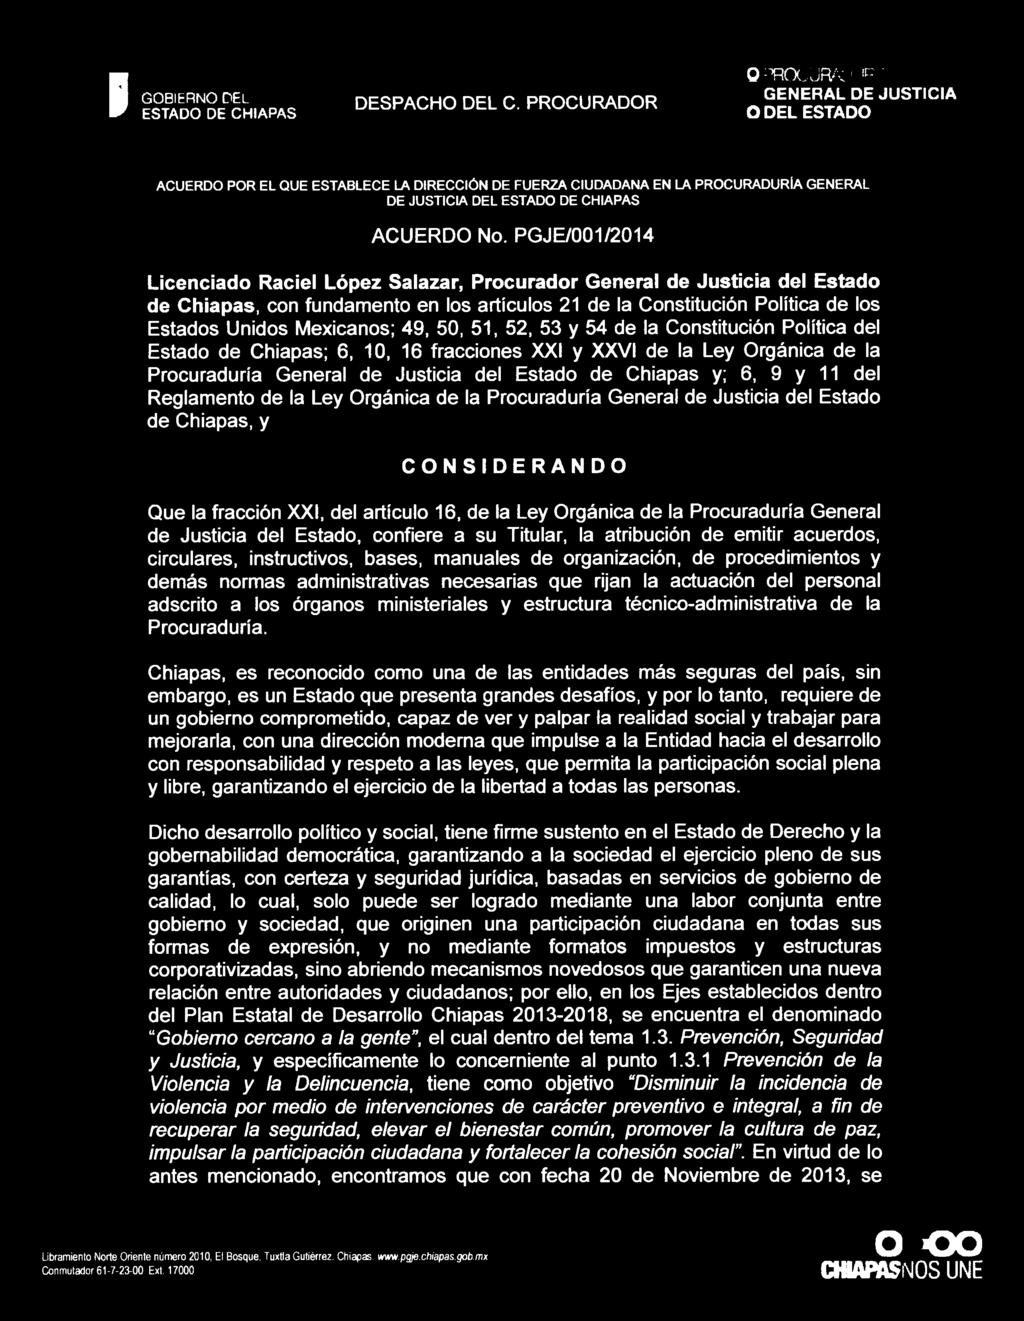 del Reglamento de la Ley Orgánica de la Procuraduría General de Justicia del Estado de Chiapas, y CONSIDERANDO Que la fracción XXI, del artículo 16, de la Ley Orgánica de la Procuraduría General de